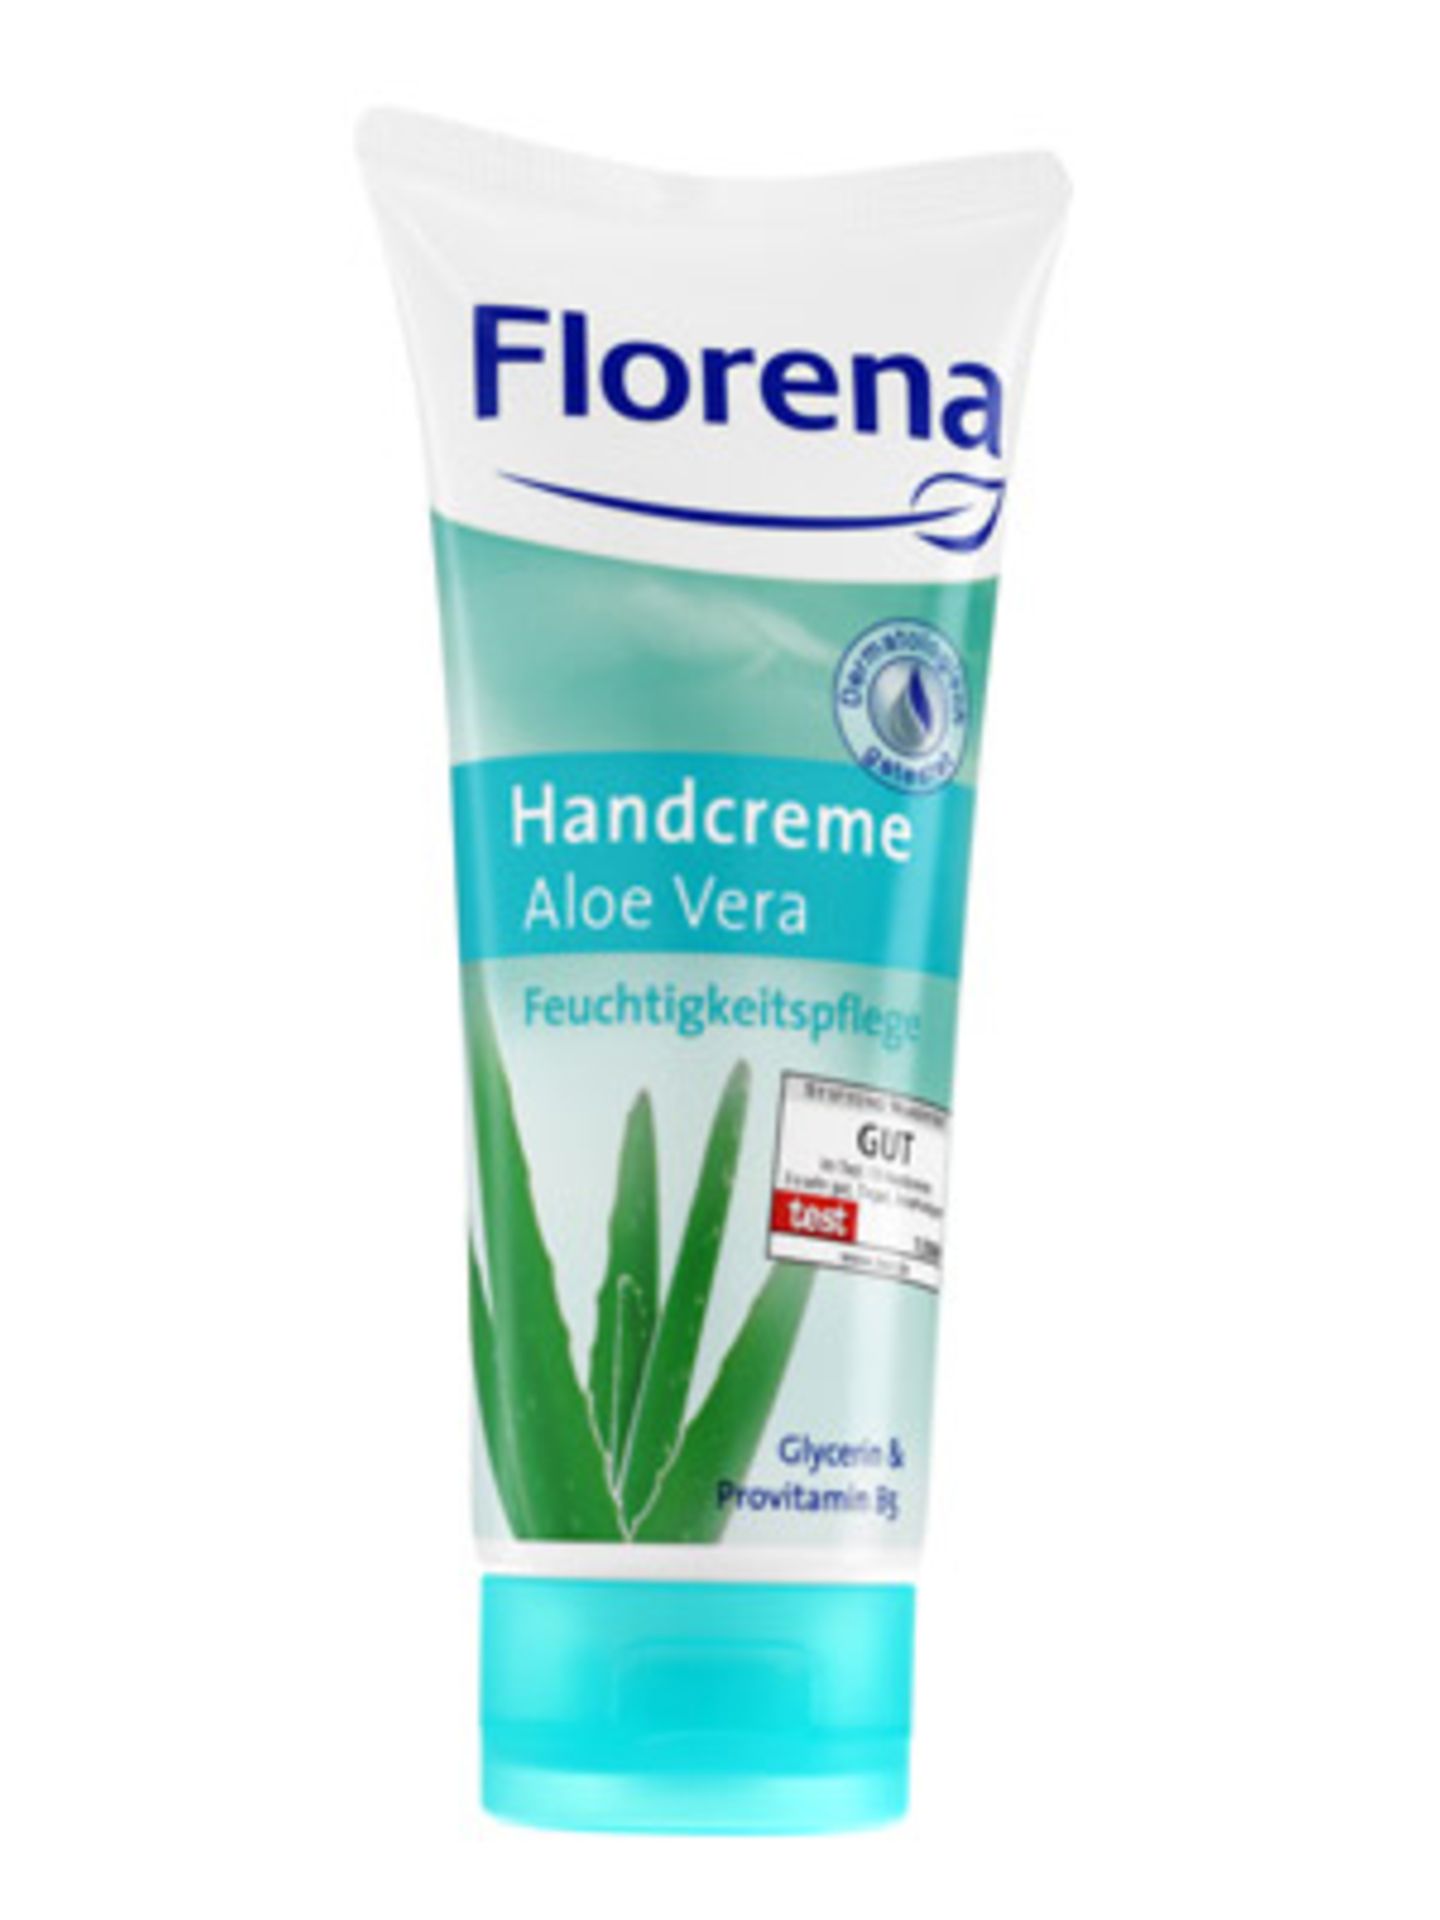 Feuchtigkeitsspendende Handcreme mit Aloe Vera, um 1,60 Euro.